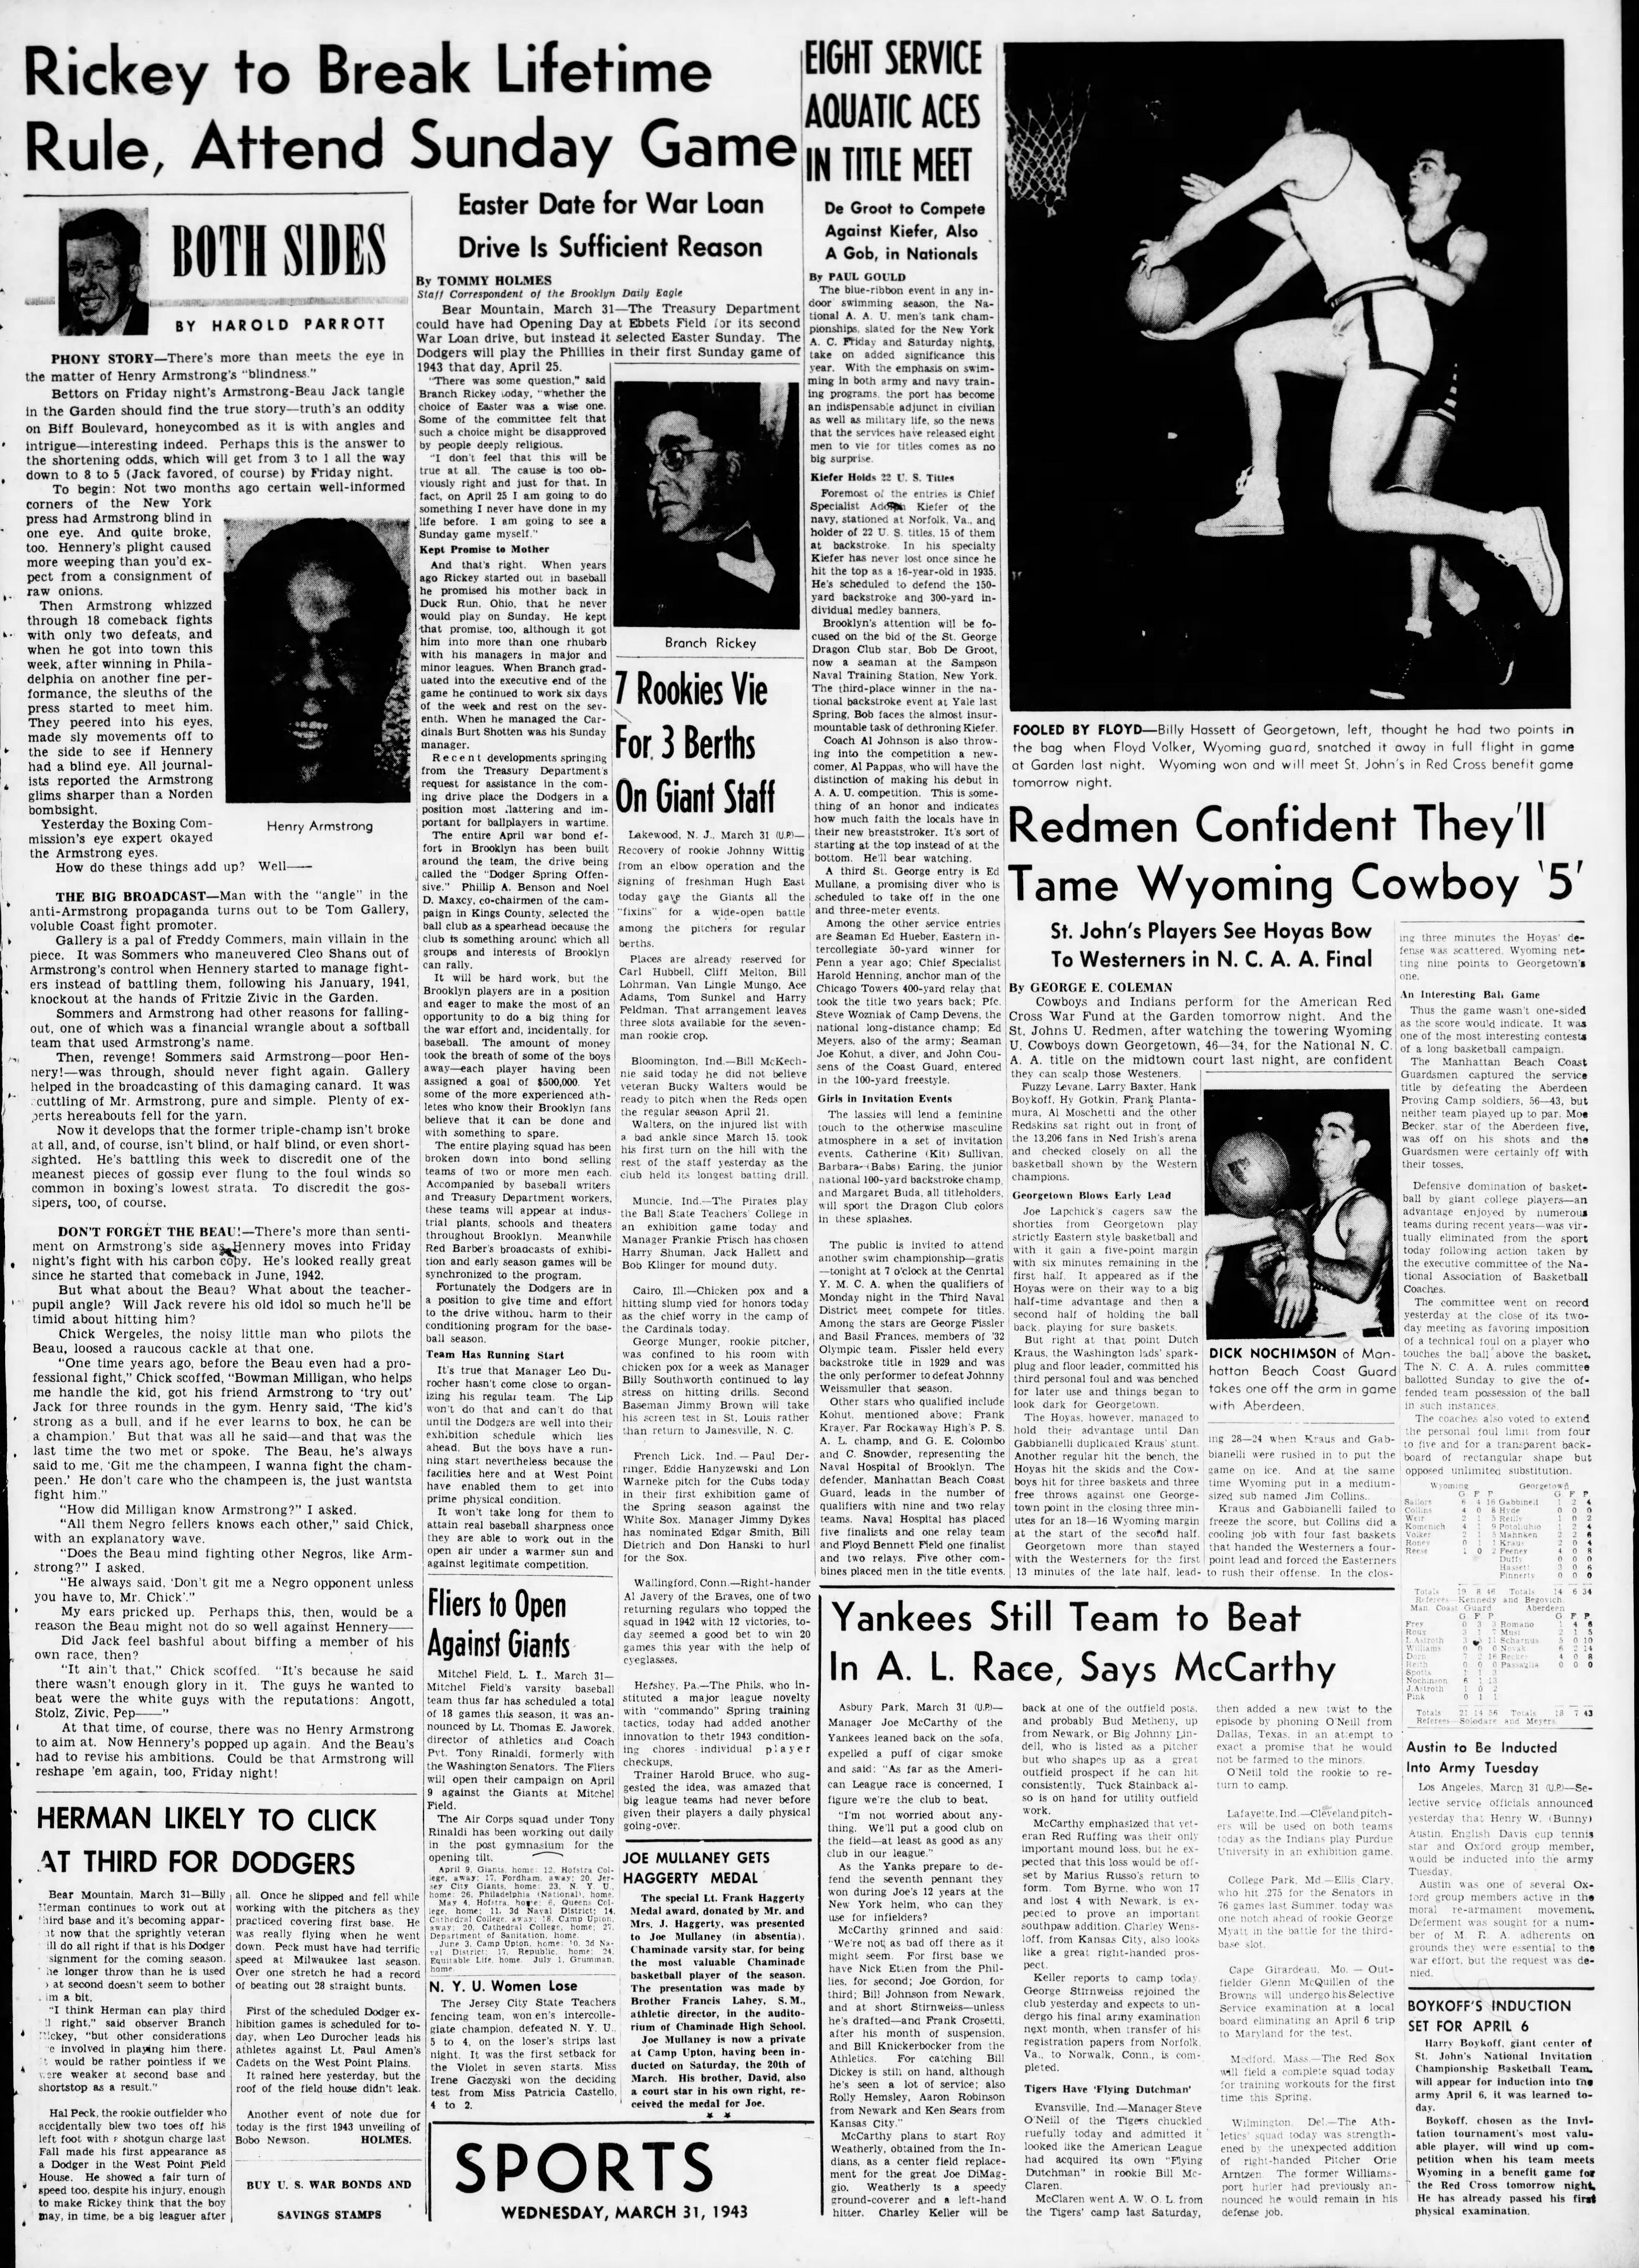 The_Brooklyn_Daily_Eagle_Wed__Mar_31__1943_(4).jpg